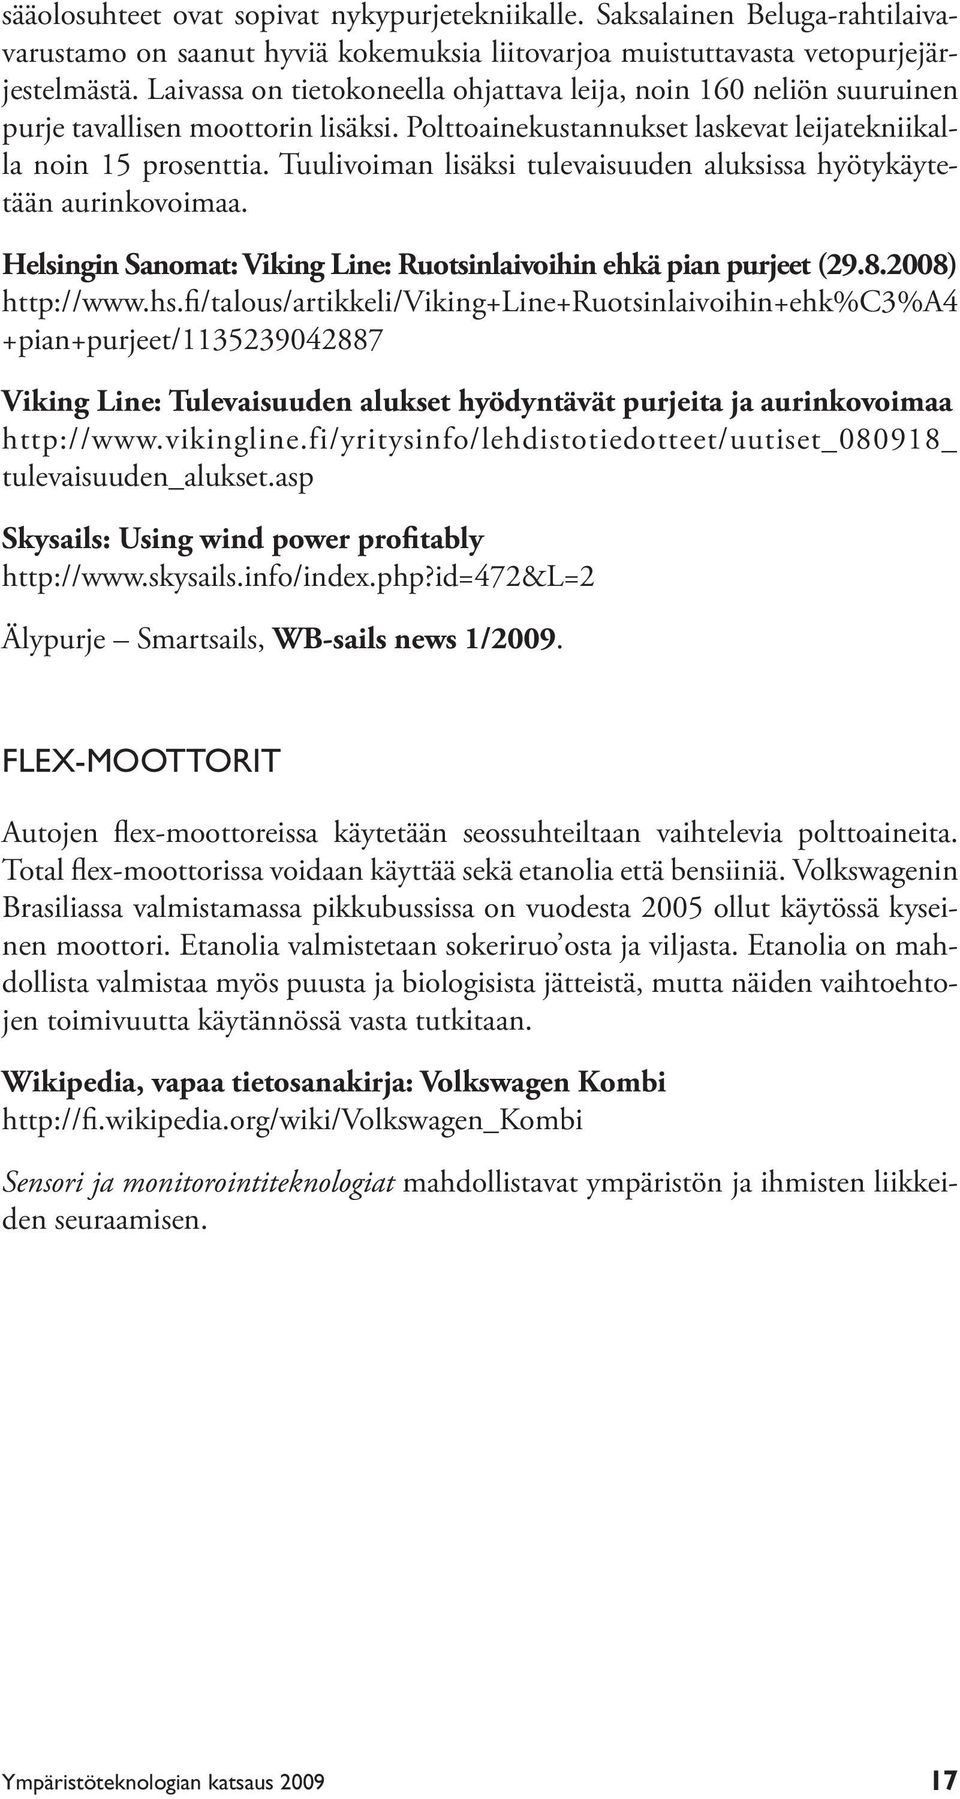 Tuulivoiman lisäksi tulevaisuuden aluksissa hyötykäytetään aurinkovoimaa. Helsingin Sanomat: Viking Line: Ruotsinlaivoihin ehkä pian purjeet (29.8.2008) http://www.hs.